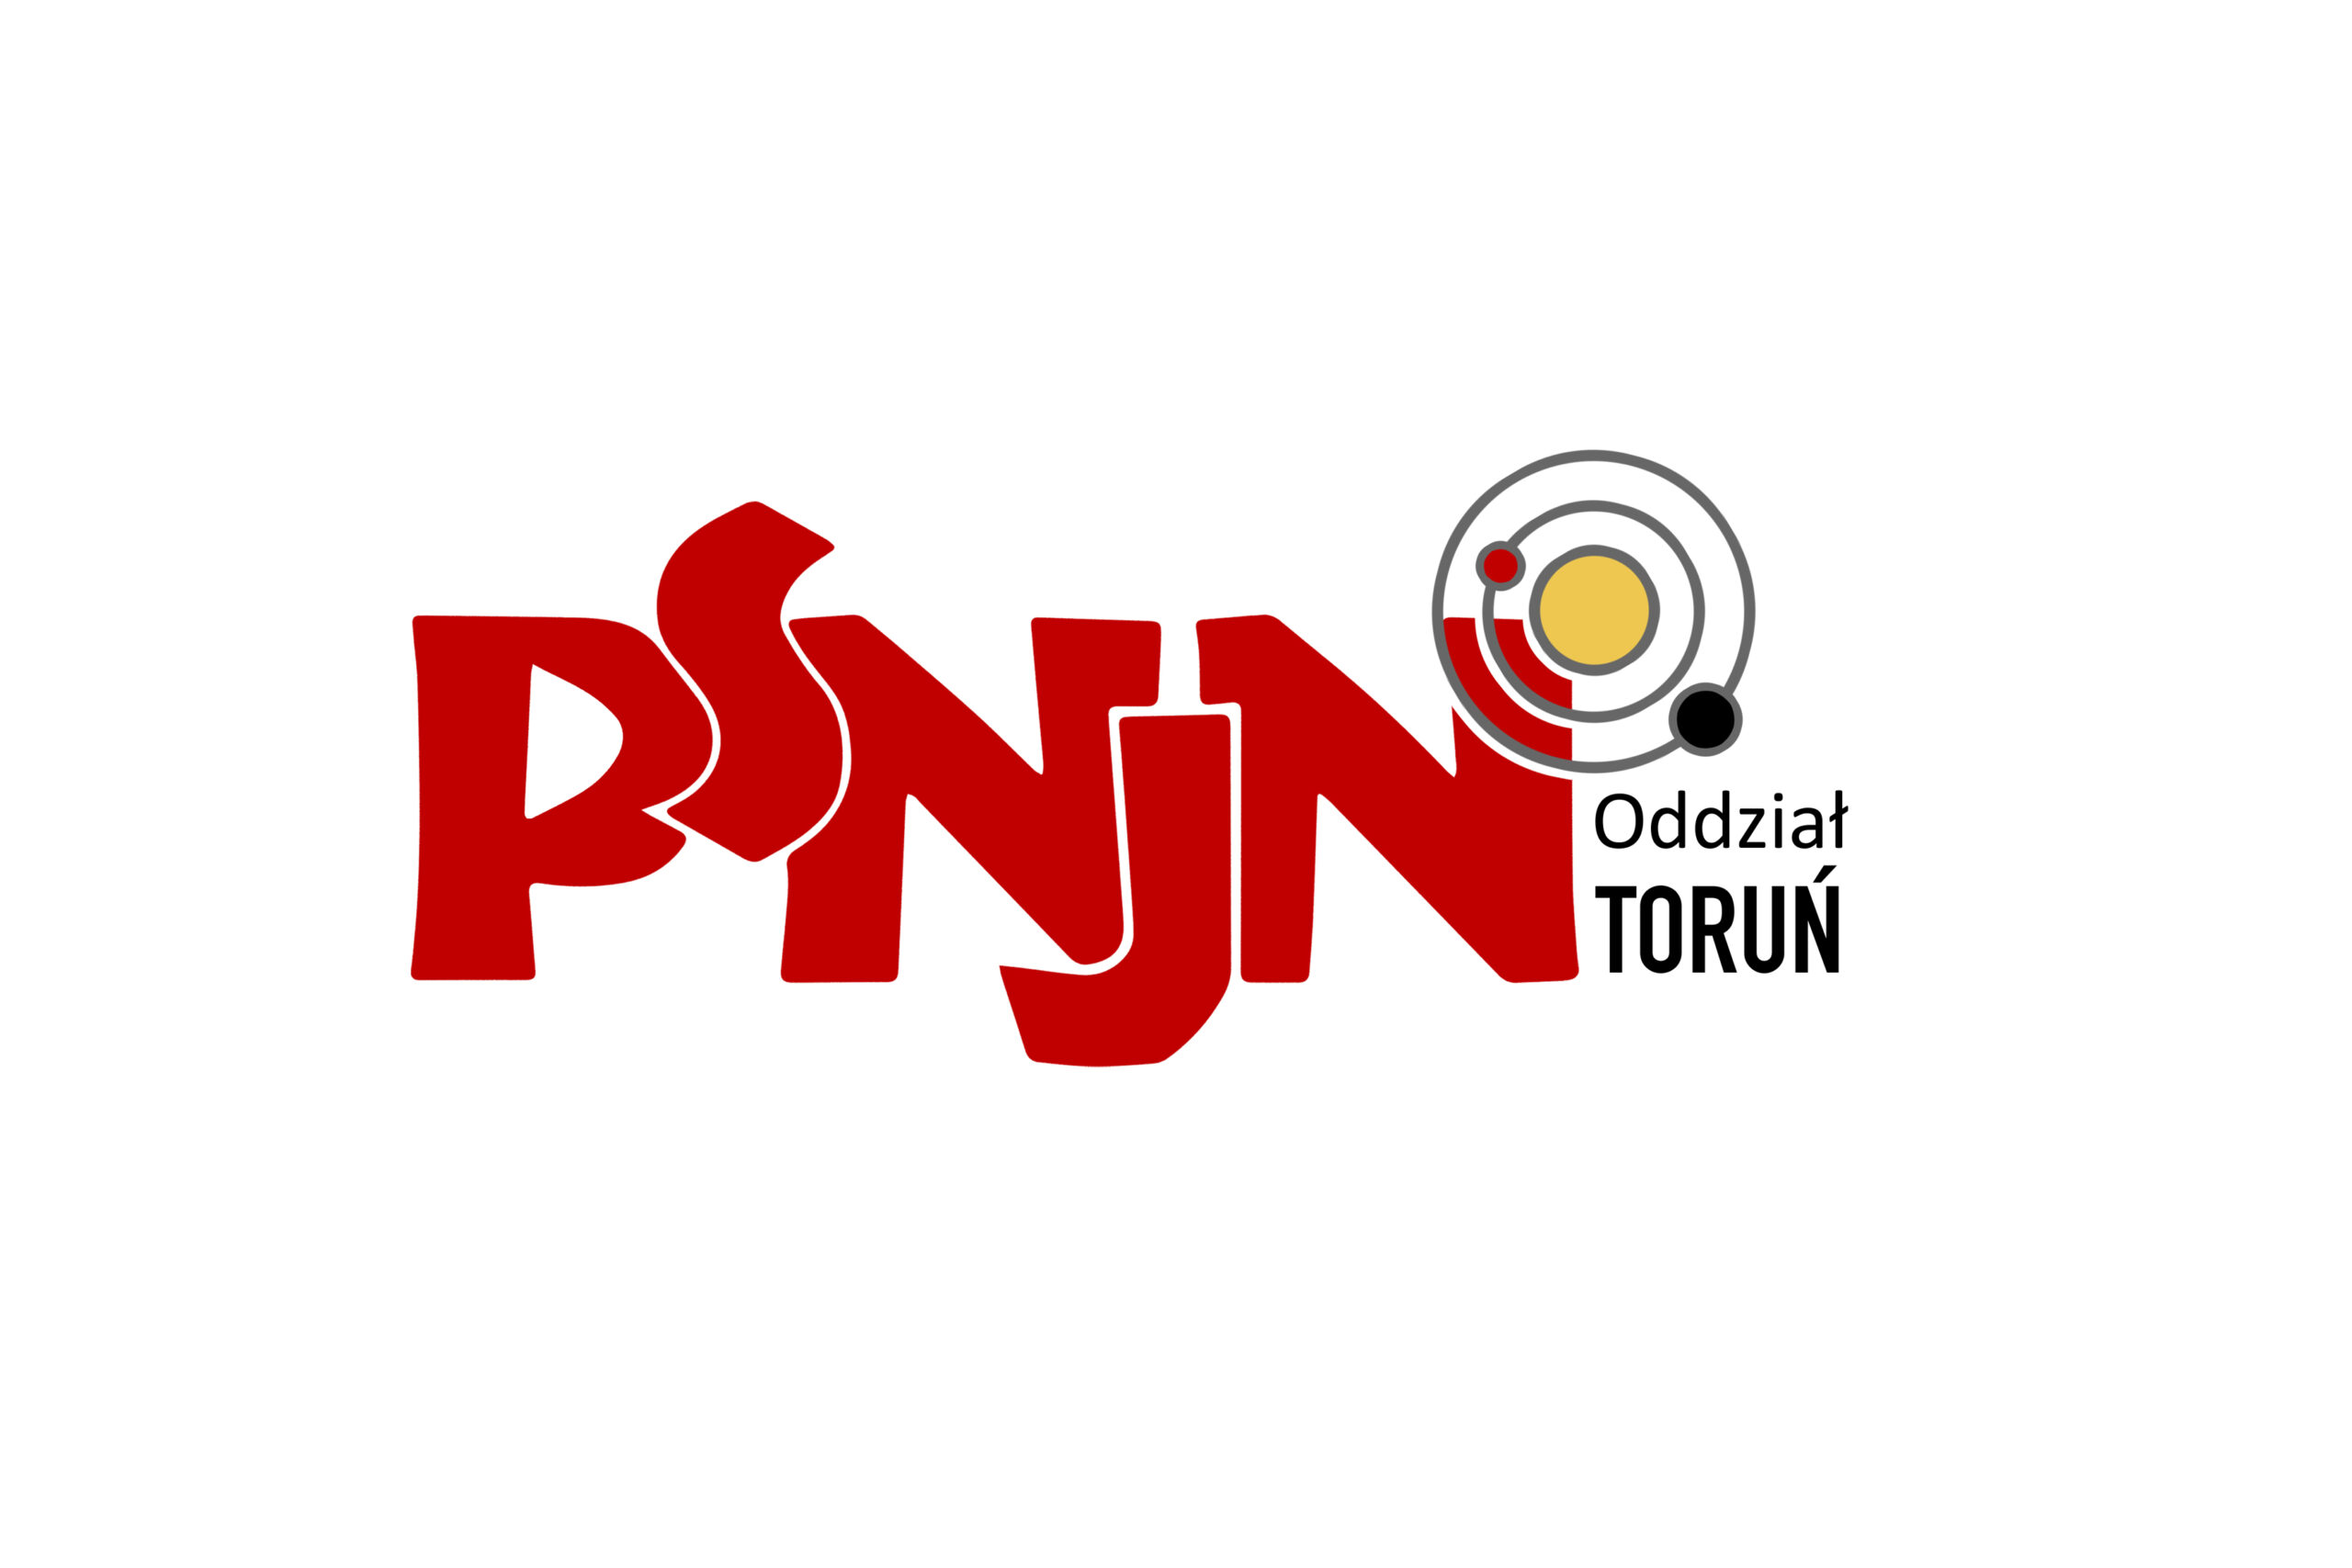 logotyp PSNJN Oddział Toruń, czerwone litery na białym tle oraz symbol układu słonecznego przy ostatniej literze